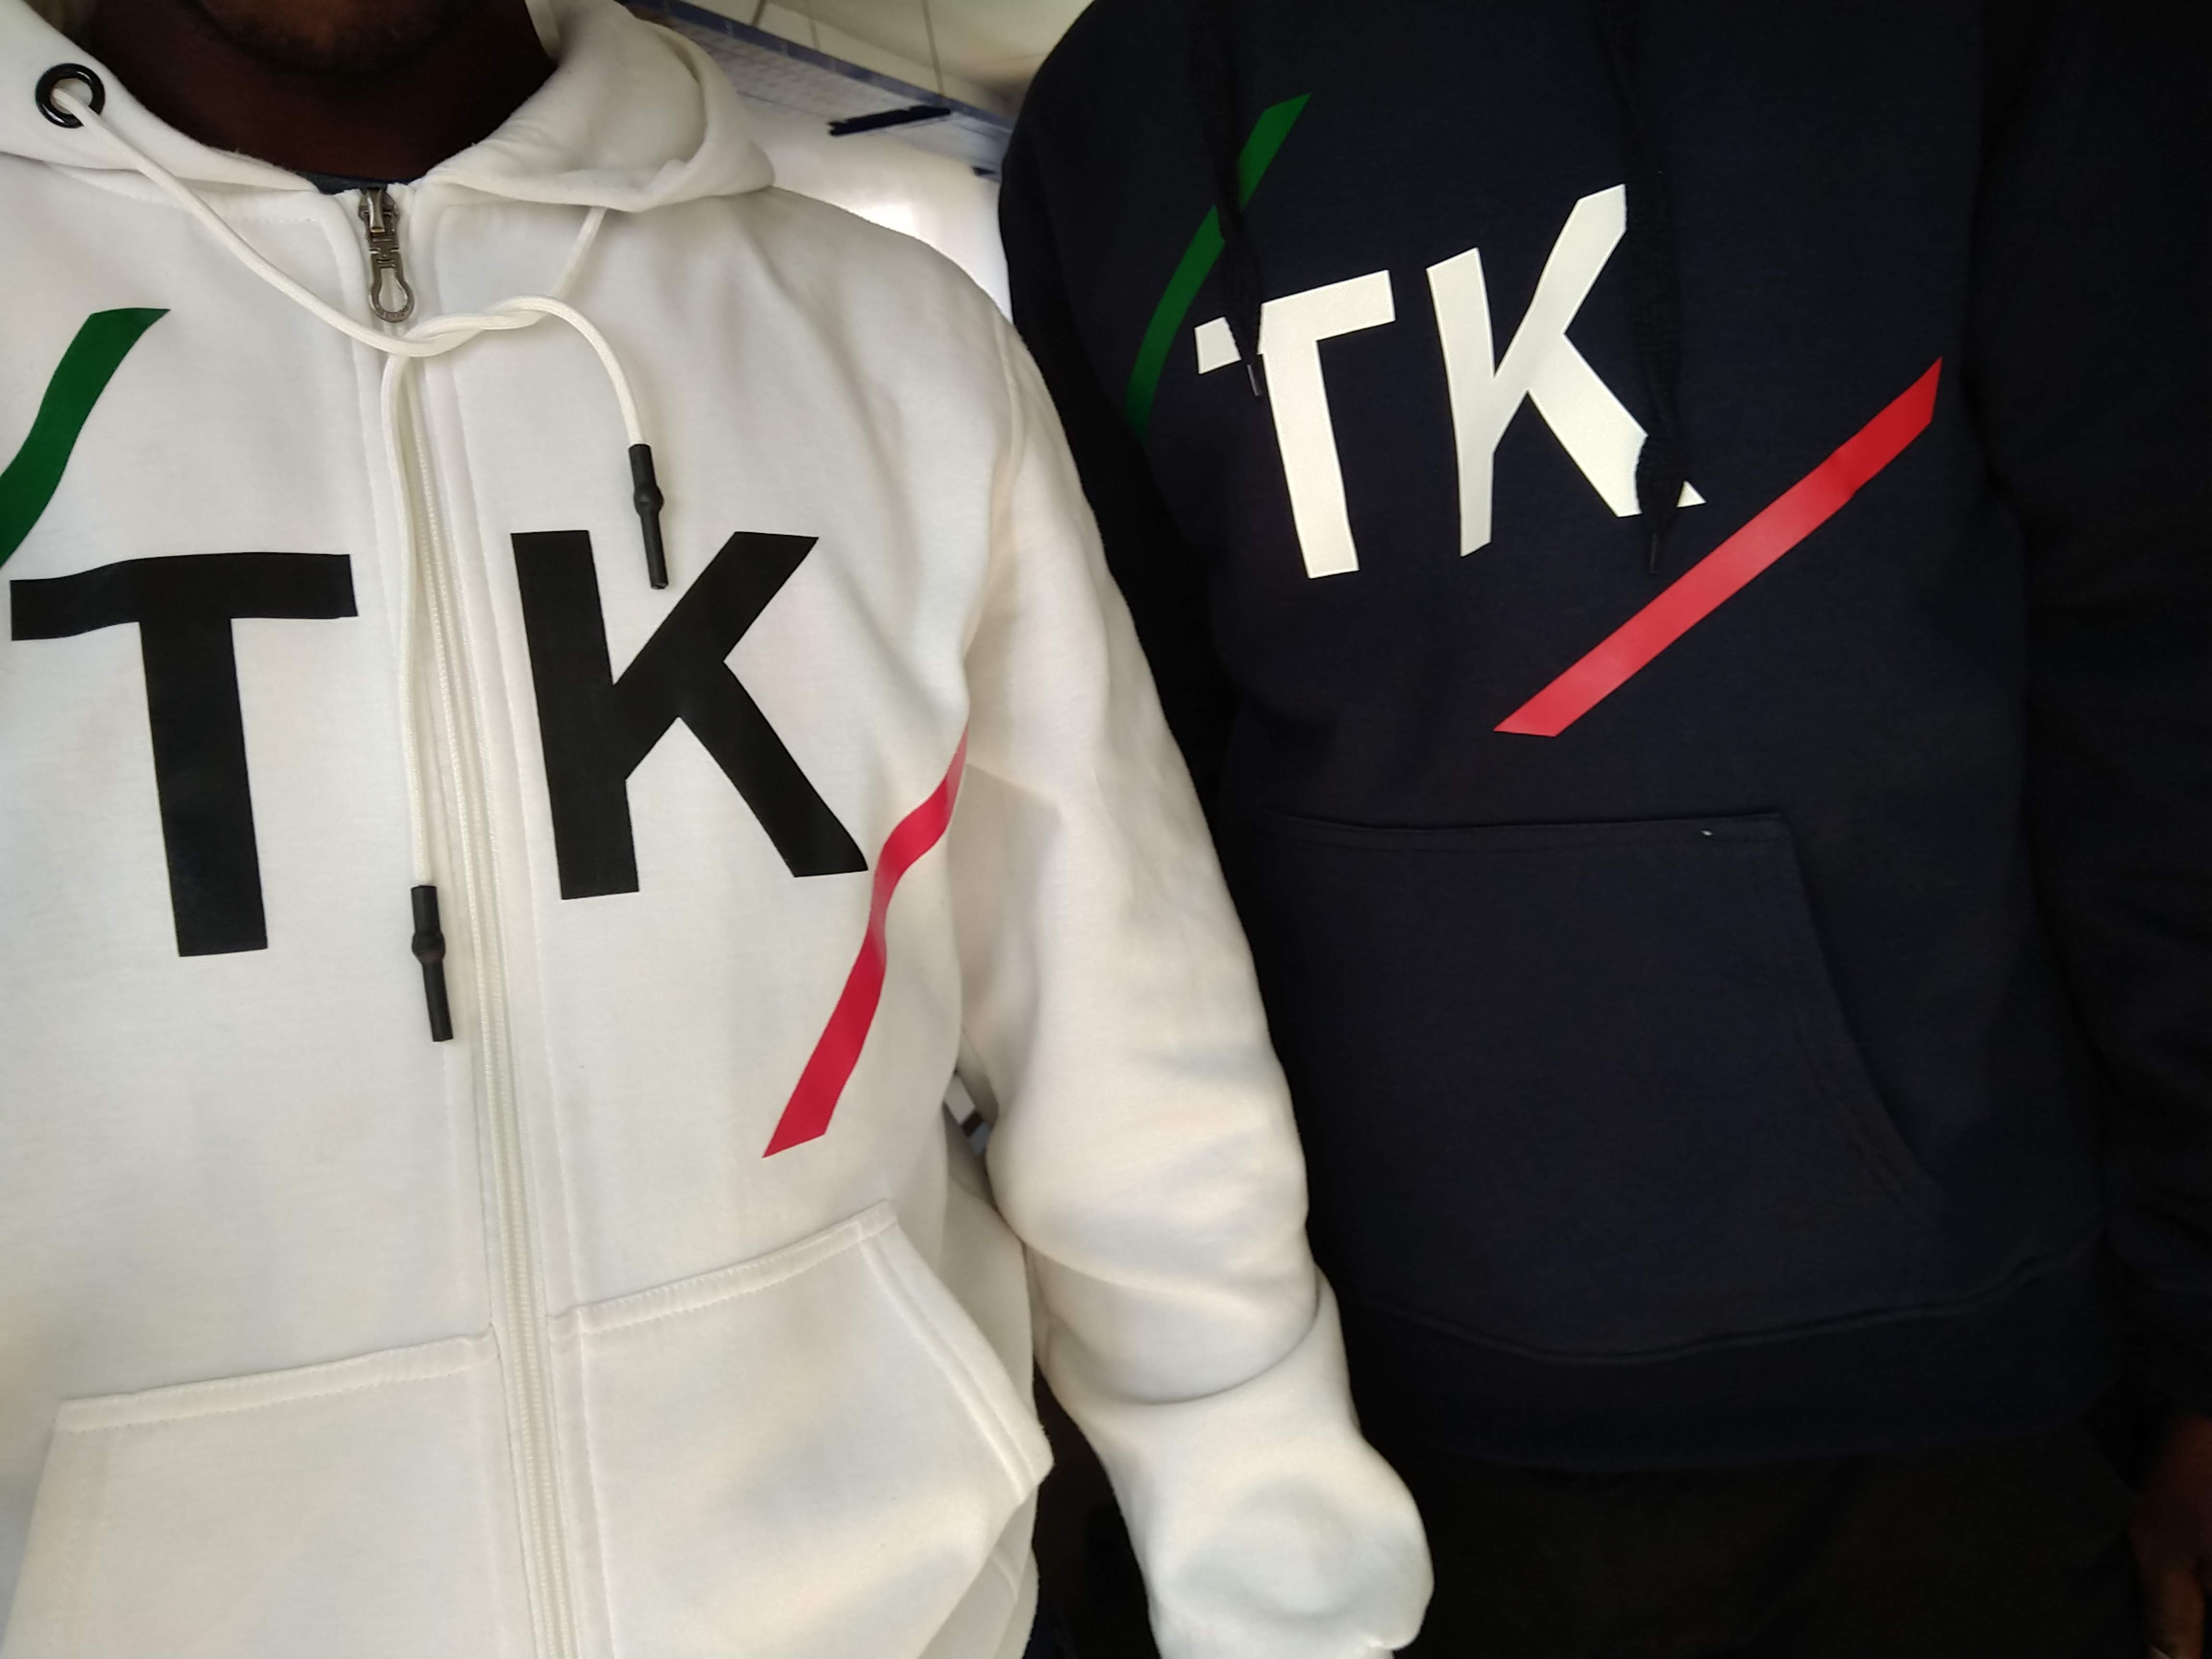 TK hoodies